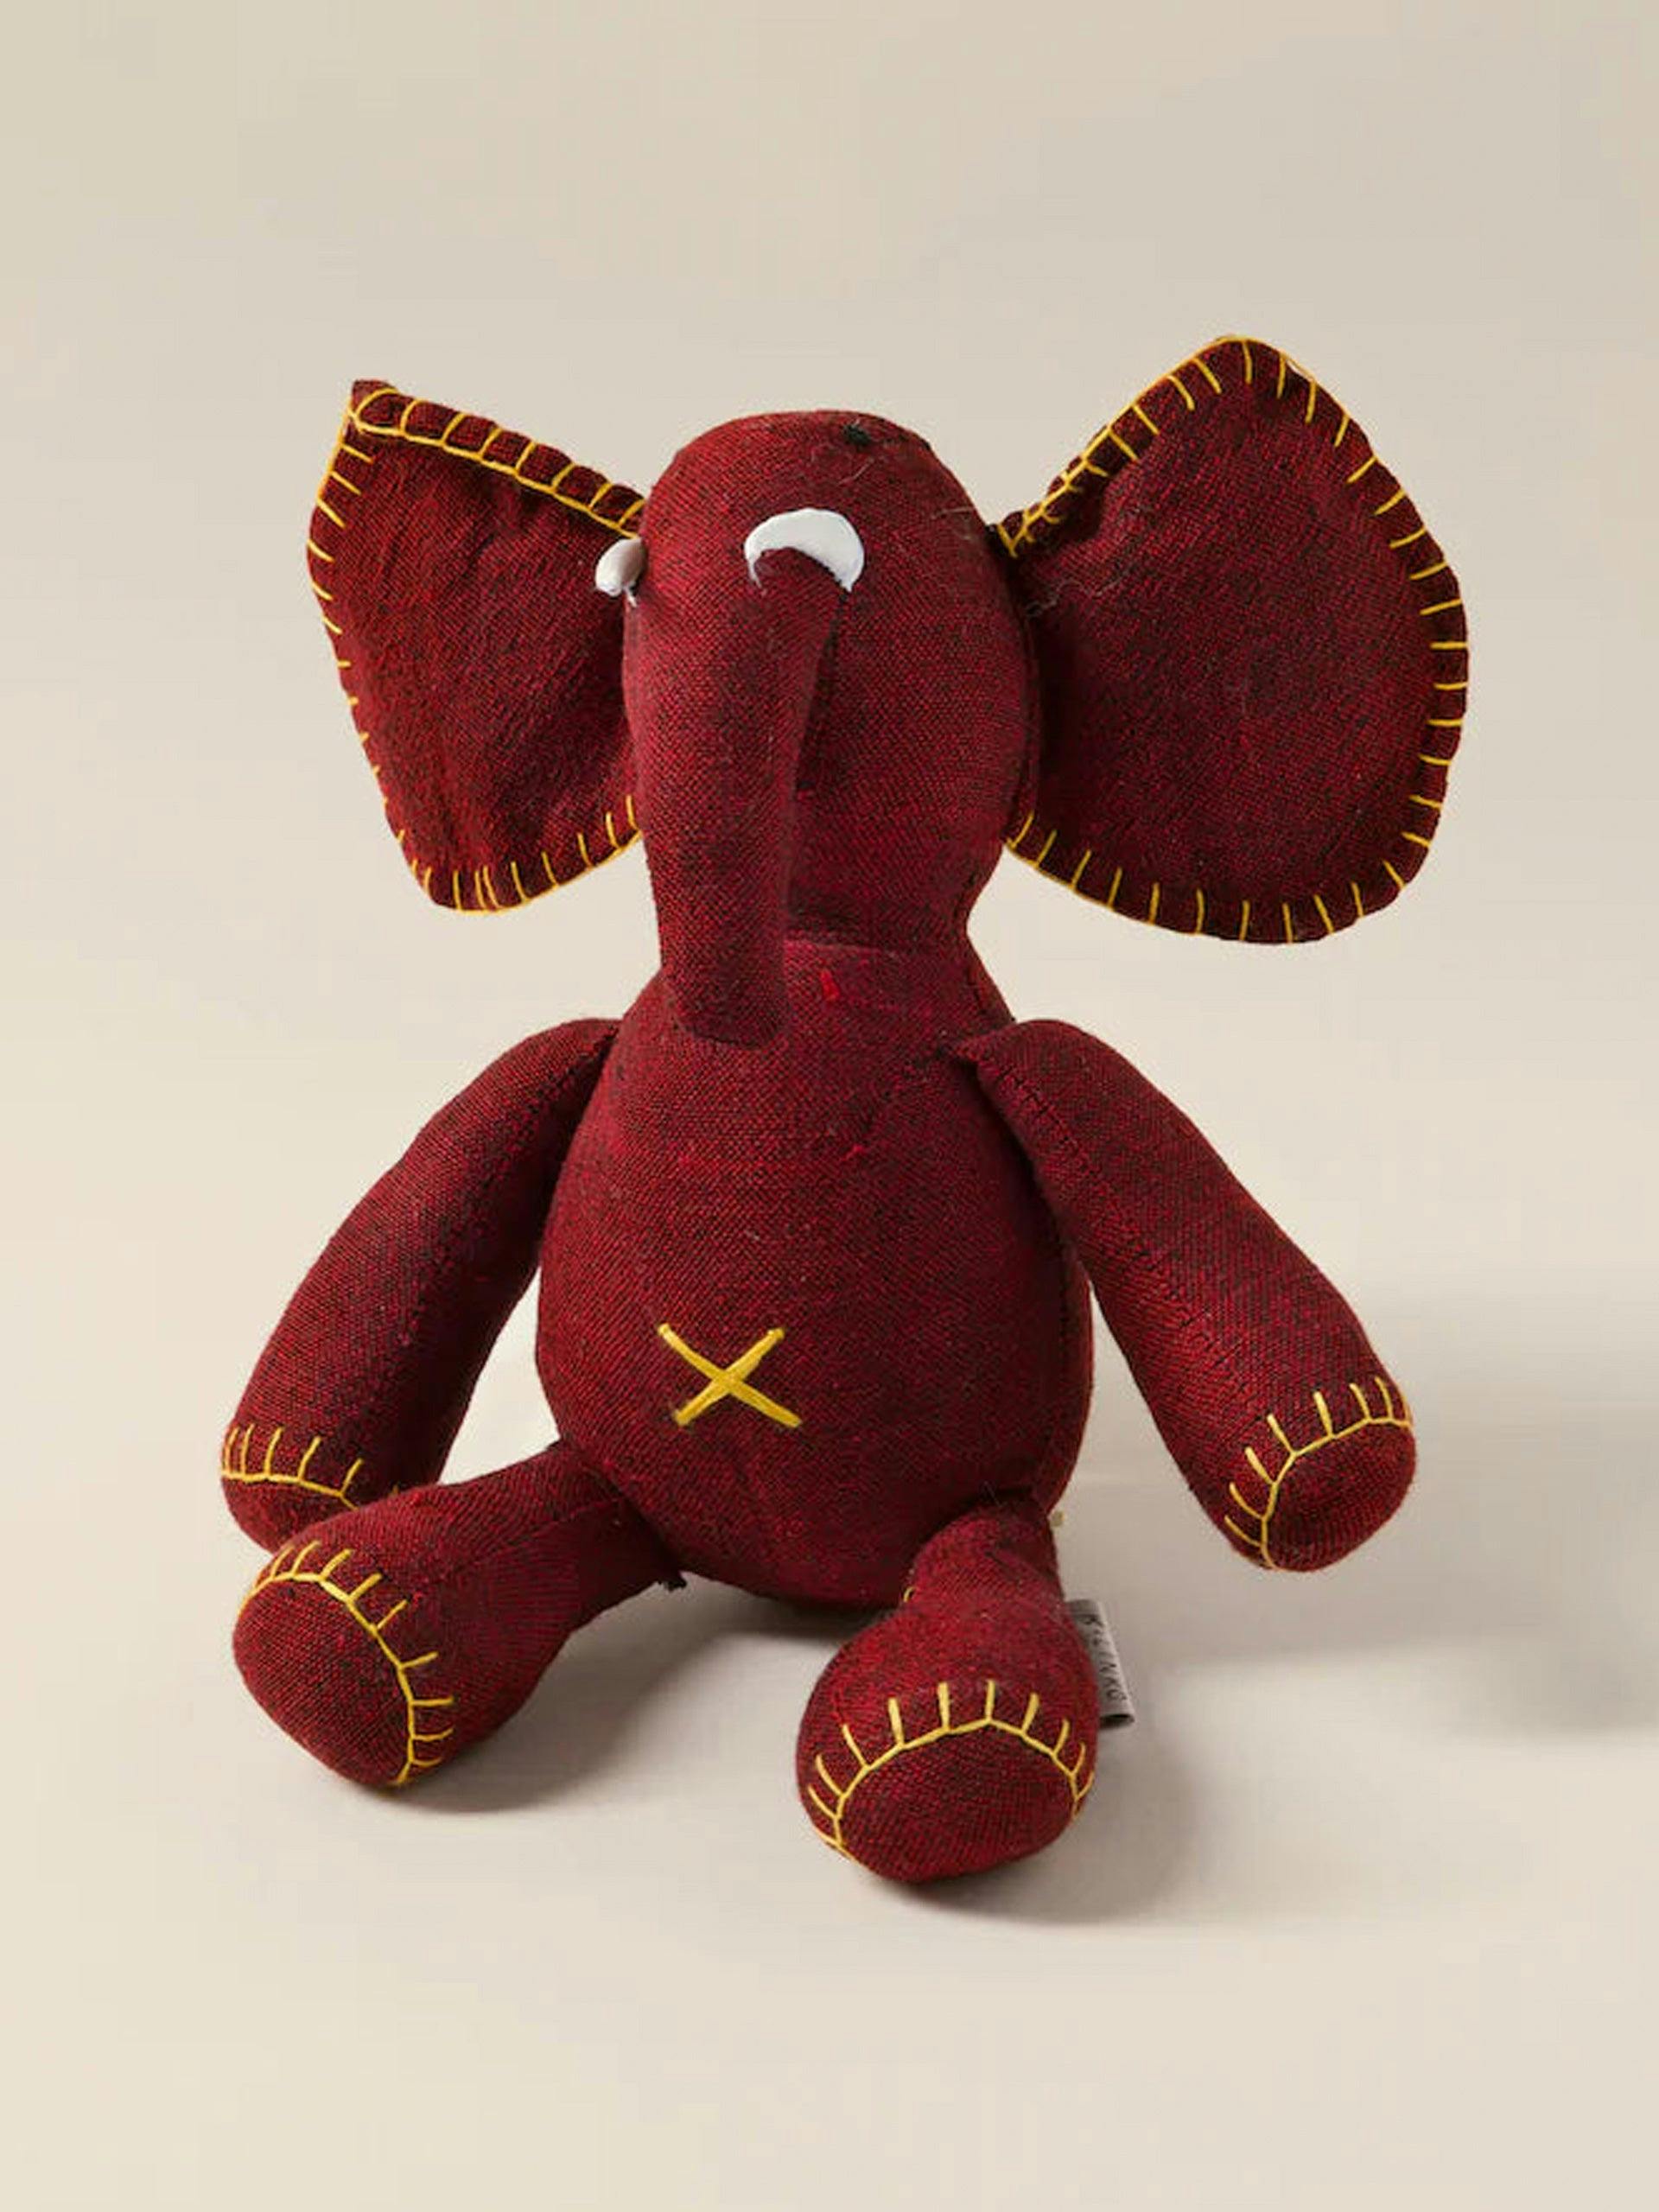 Soft children's toy elephant